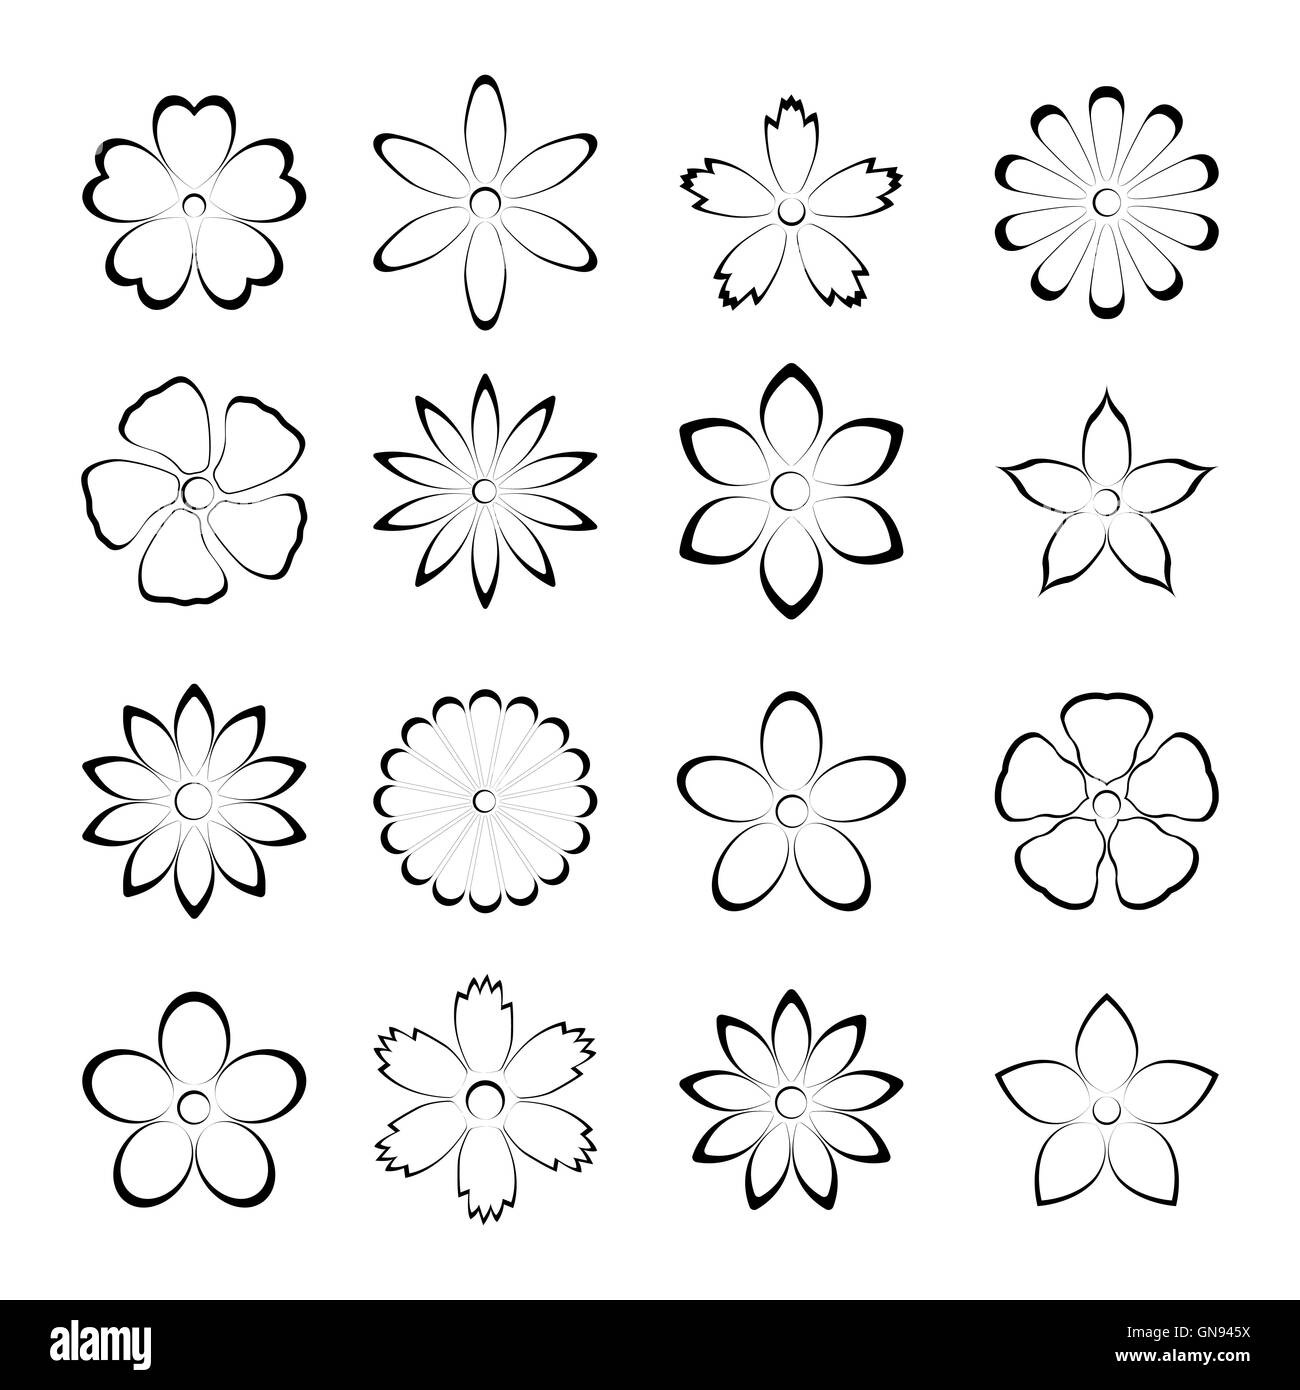 Flower bud set, vector illustration Stock Vector